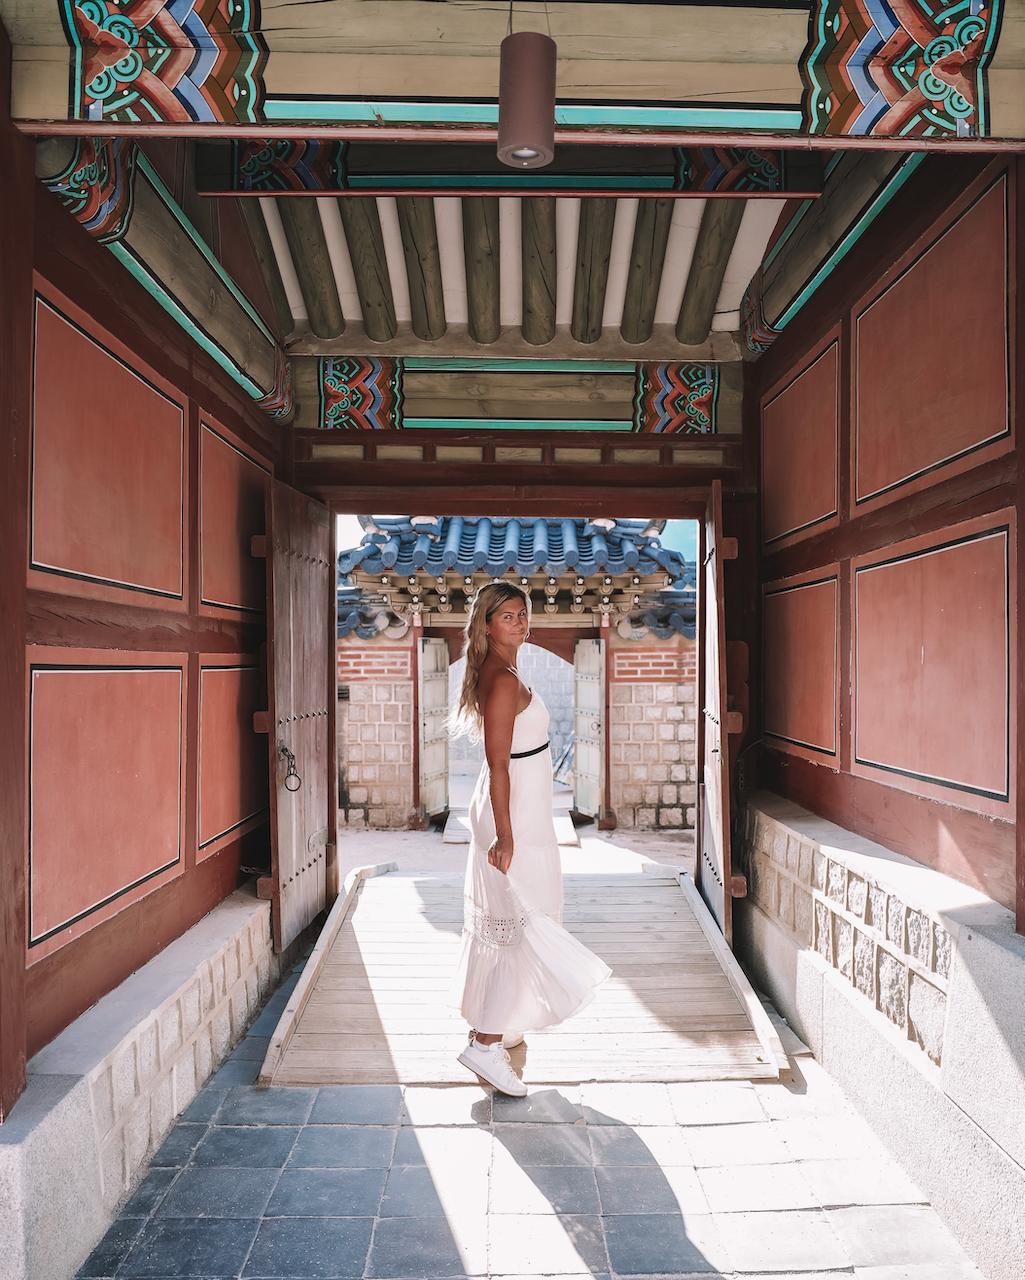 Blond woman walking around the palace - Gyeongbokgung Palace - Seoul - South Korea